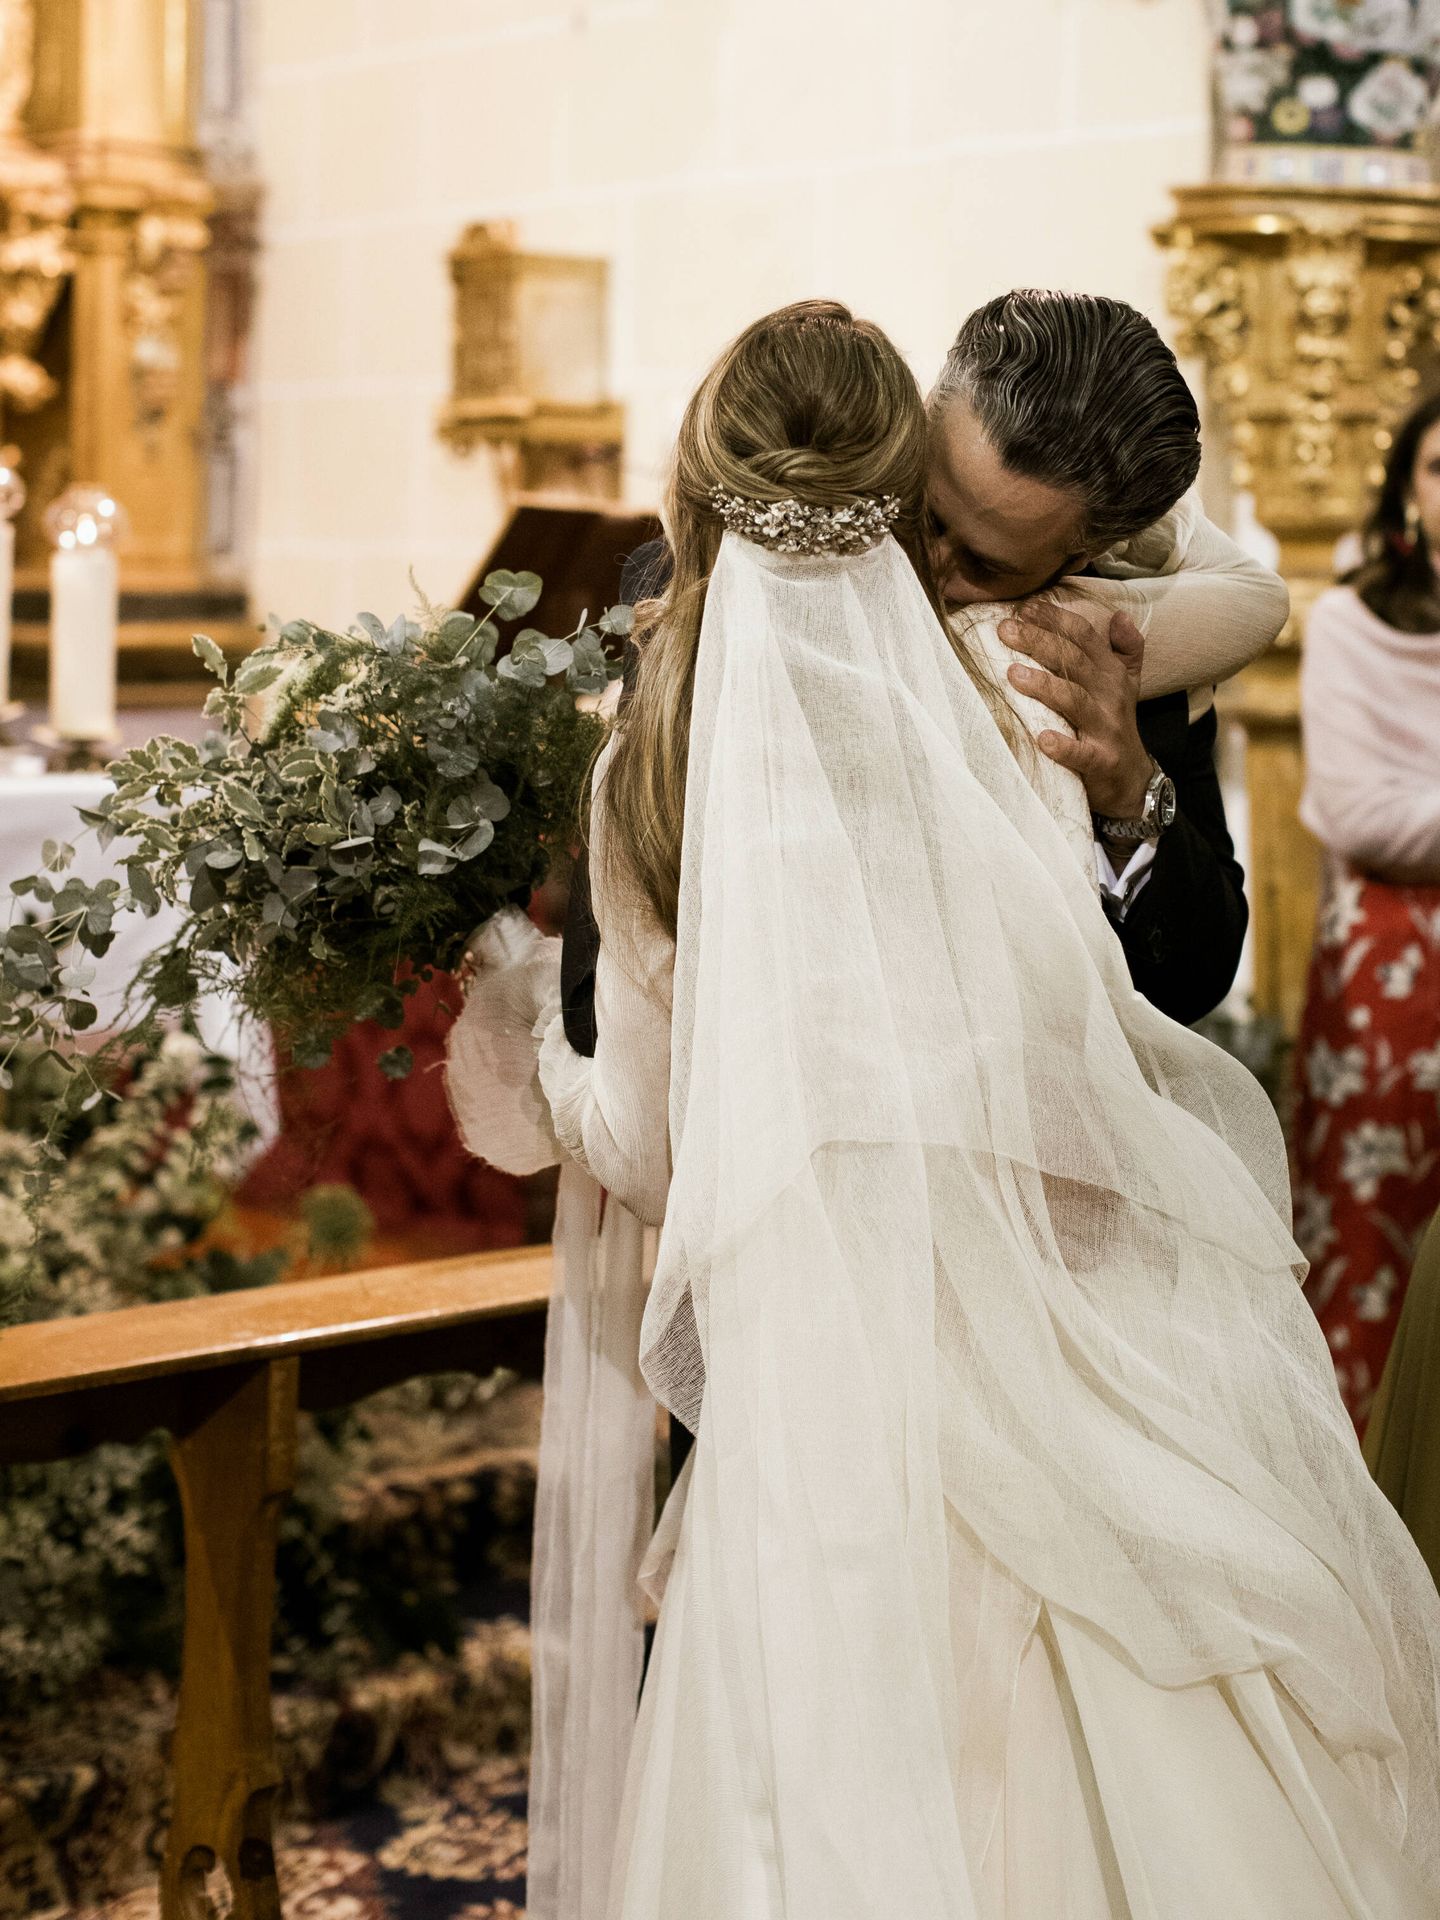 La boda de María y Fran. (Lalula Photography)